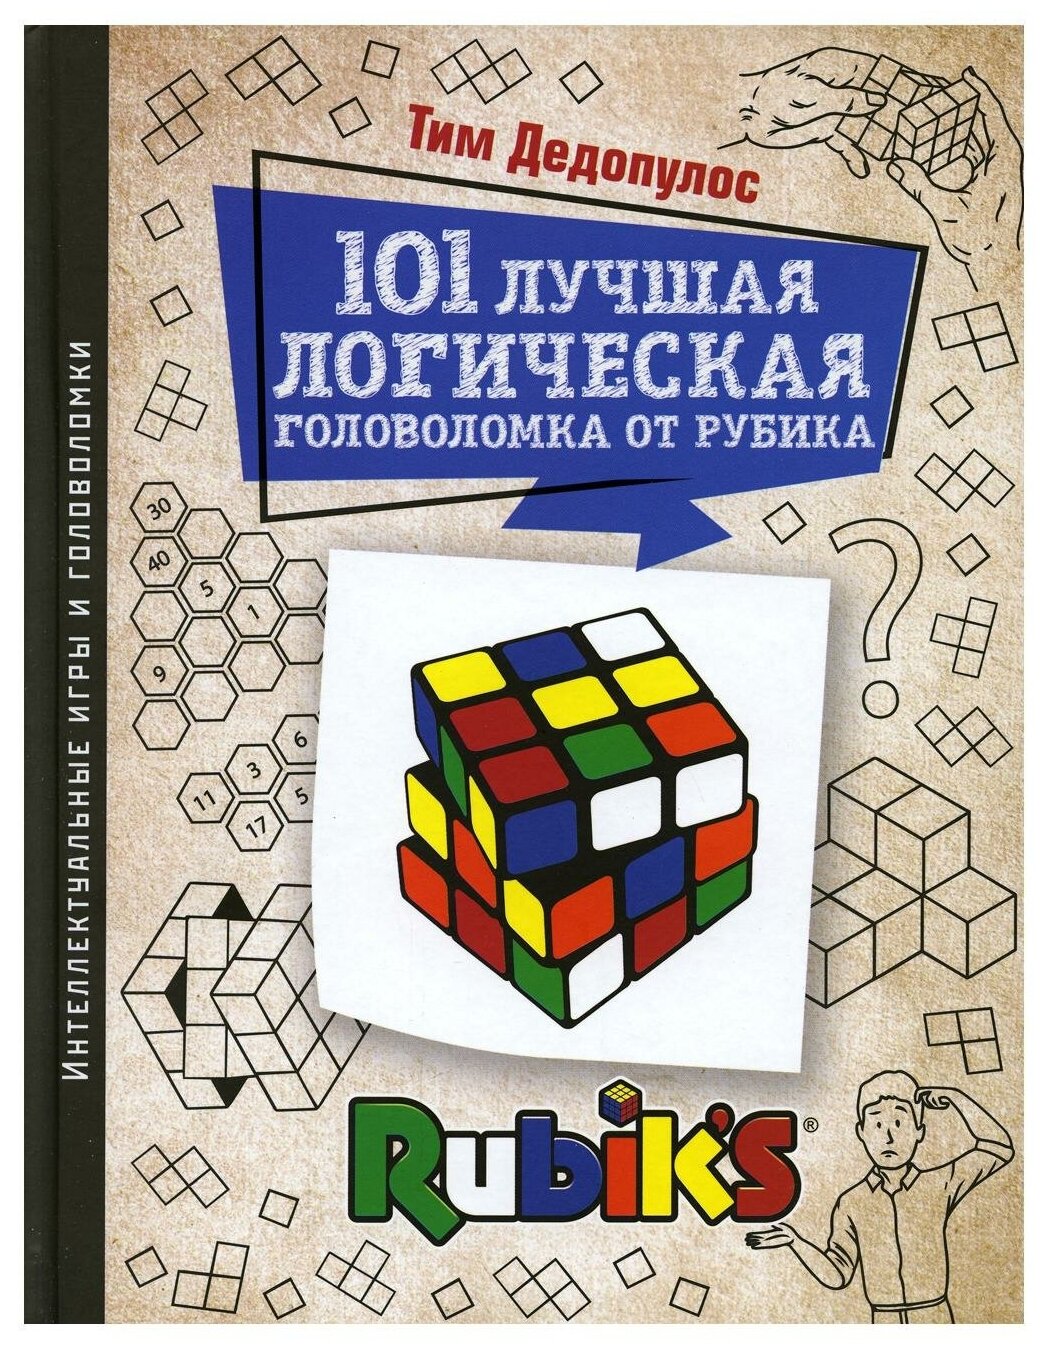 101 лучшая логическая головоломка от Рубика - фото №1